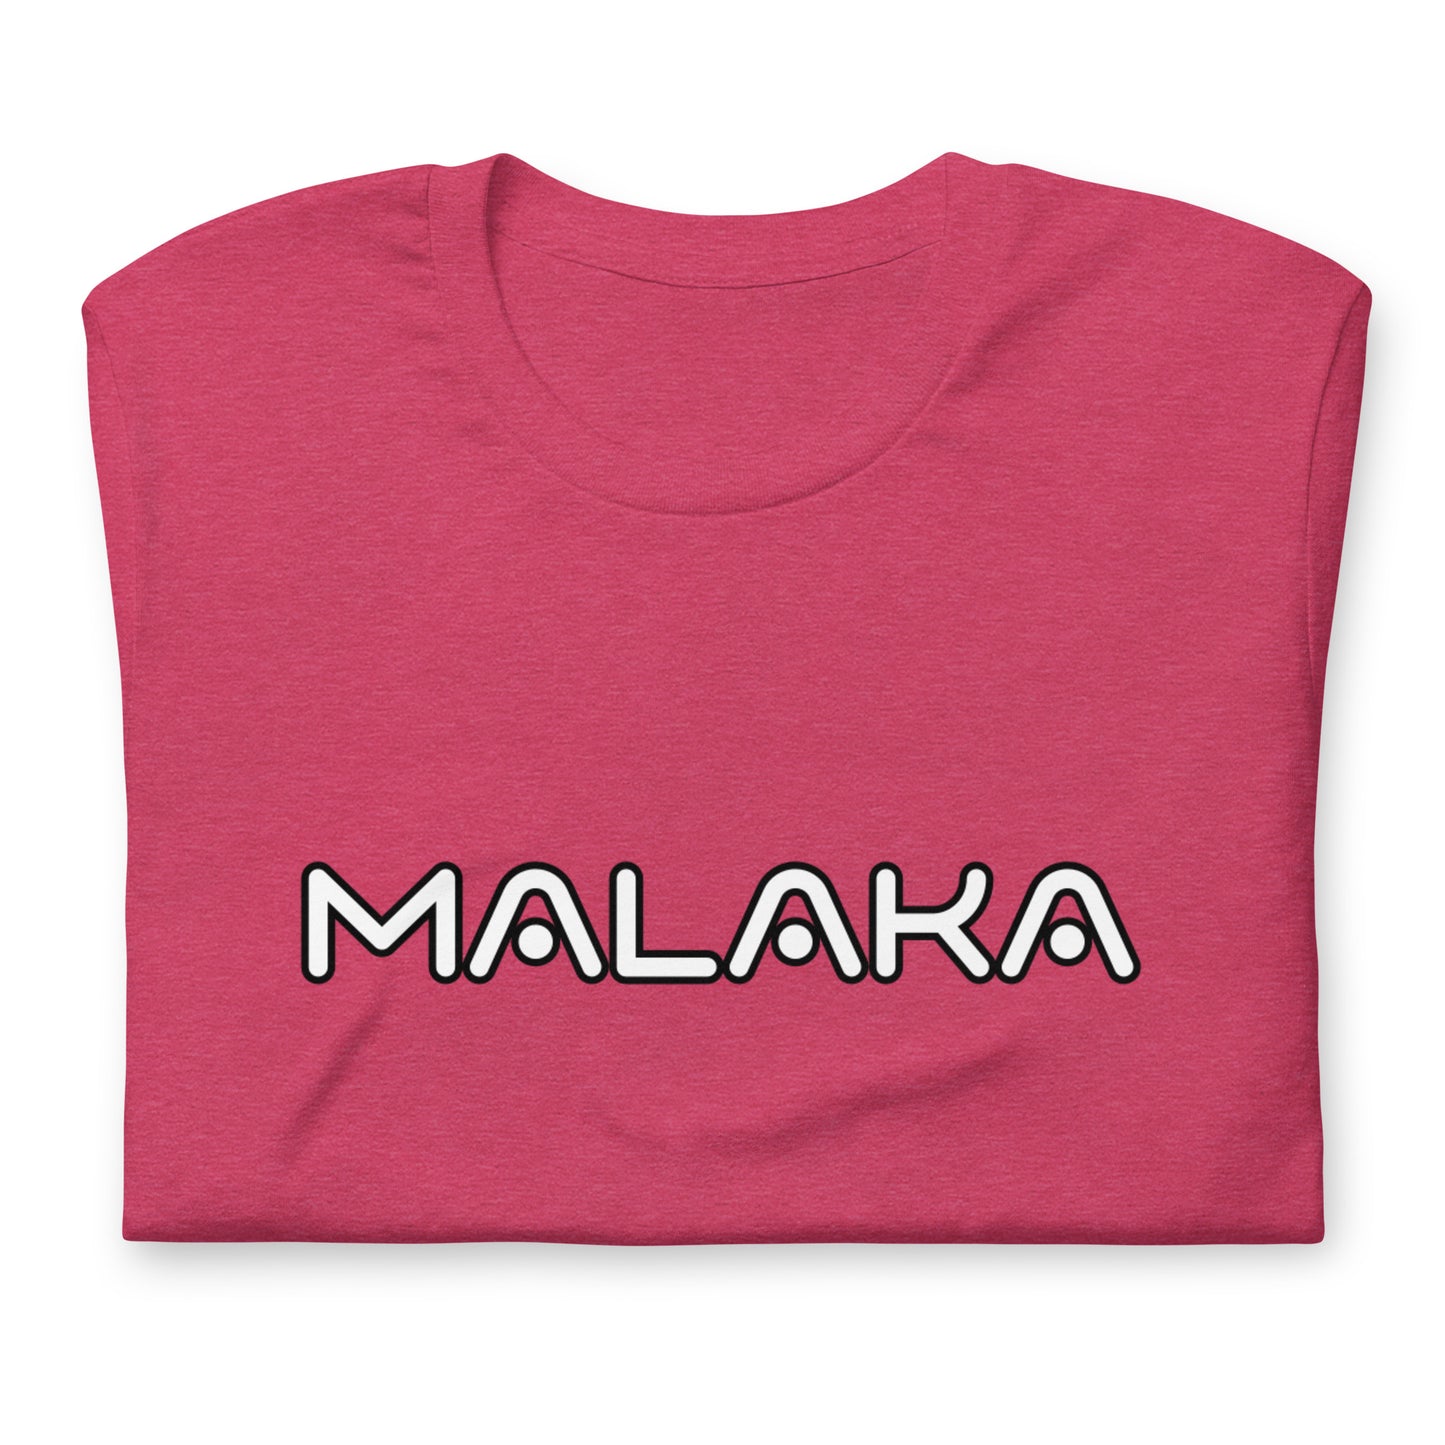 Malaka